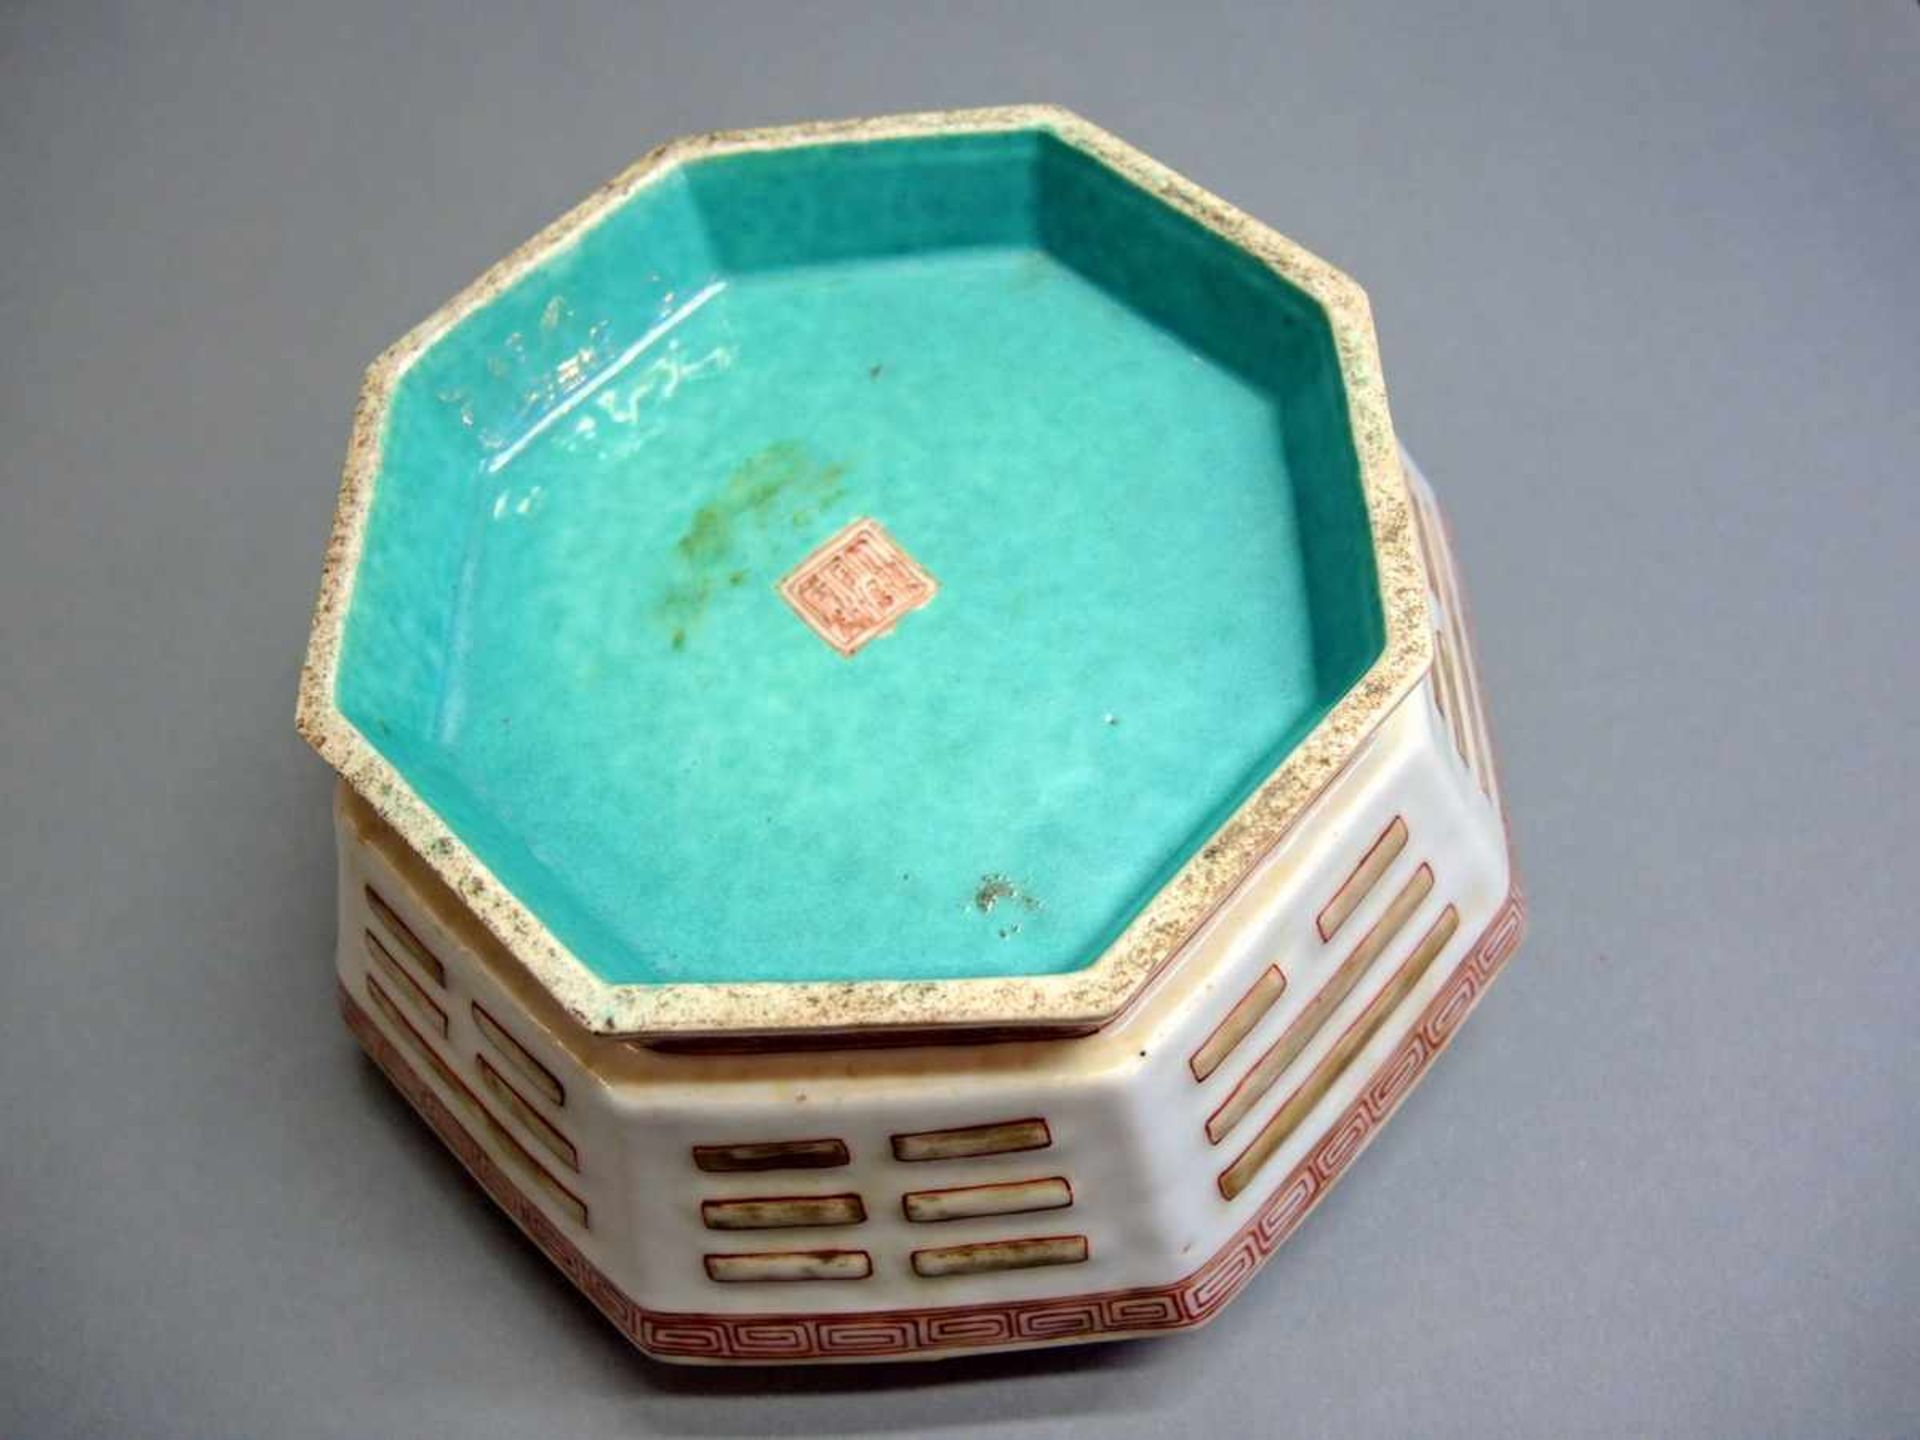 Oktogonale Tongzhi-Schale Porzellan, mit Holzsockel. Mäanderband und Trigrammdekor. Rote Tongzhi- - Bild 2 aus 2